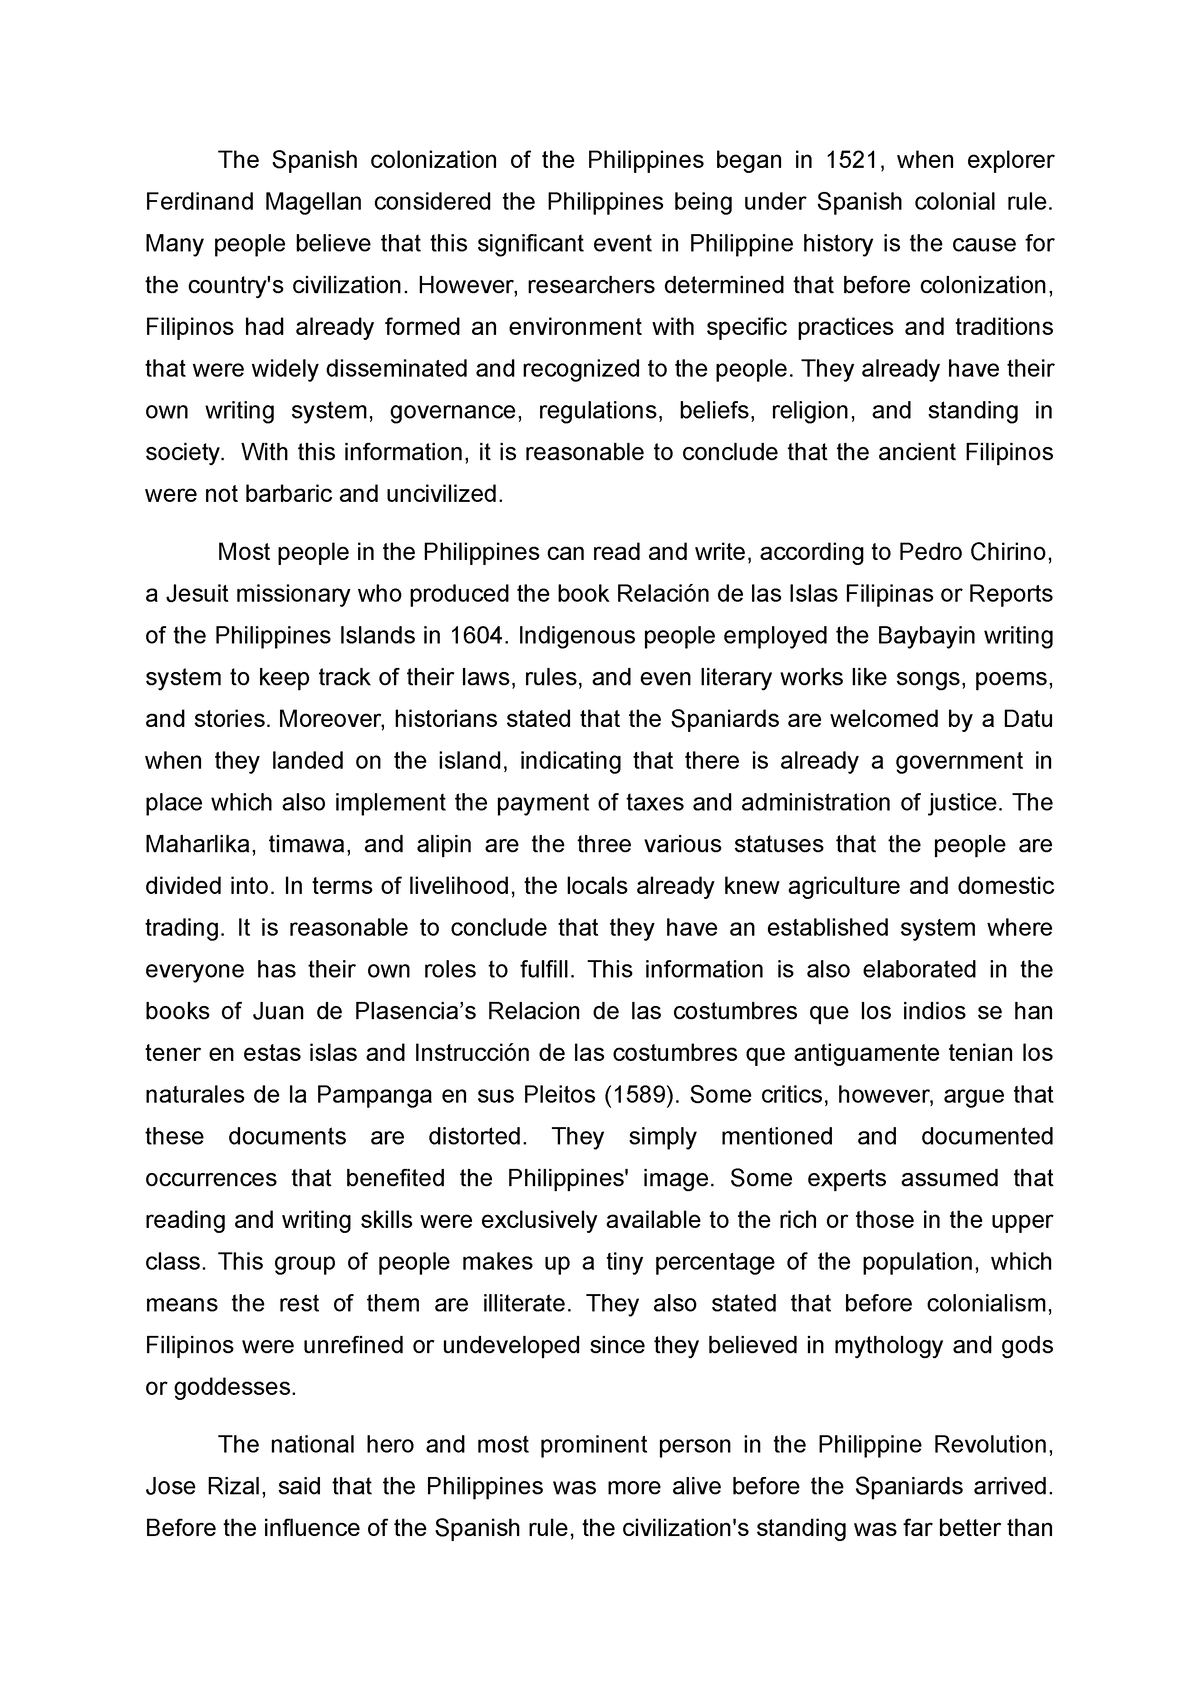 argumentative essay topics 2020 philippines